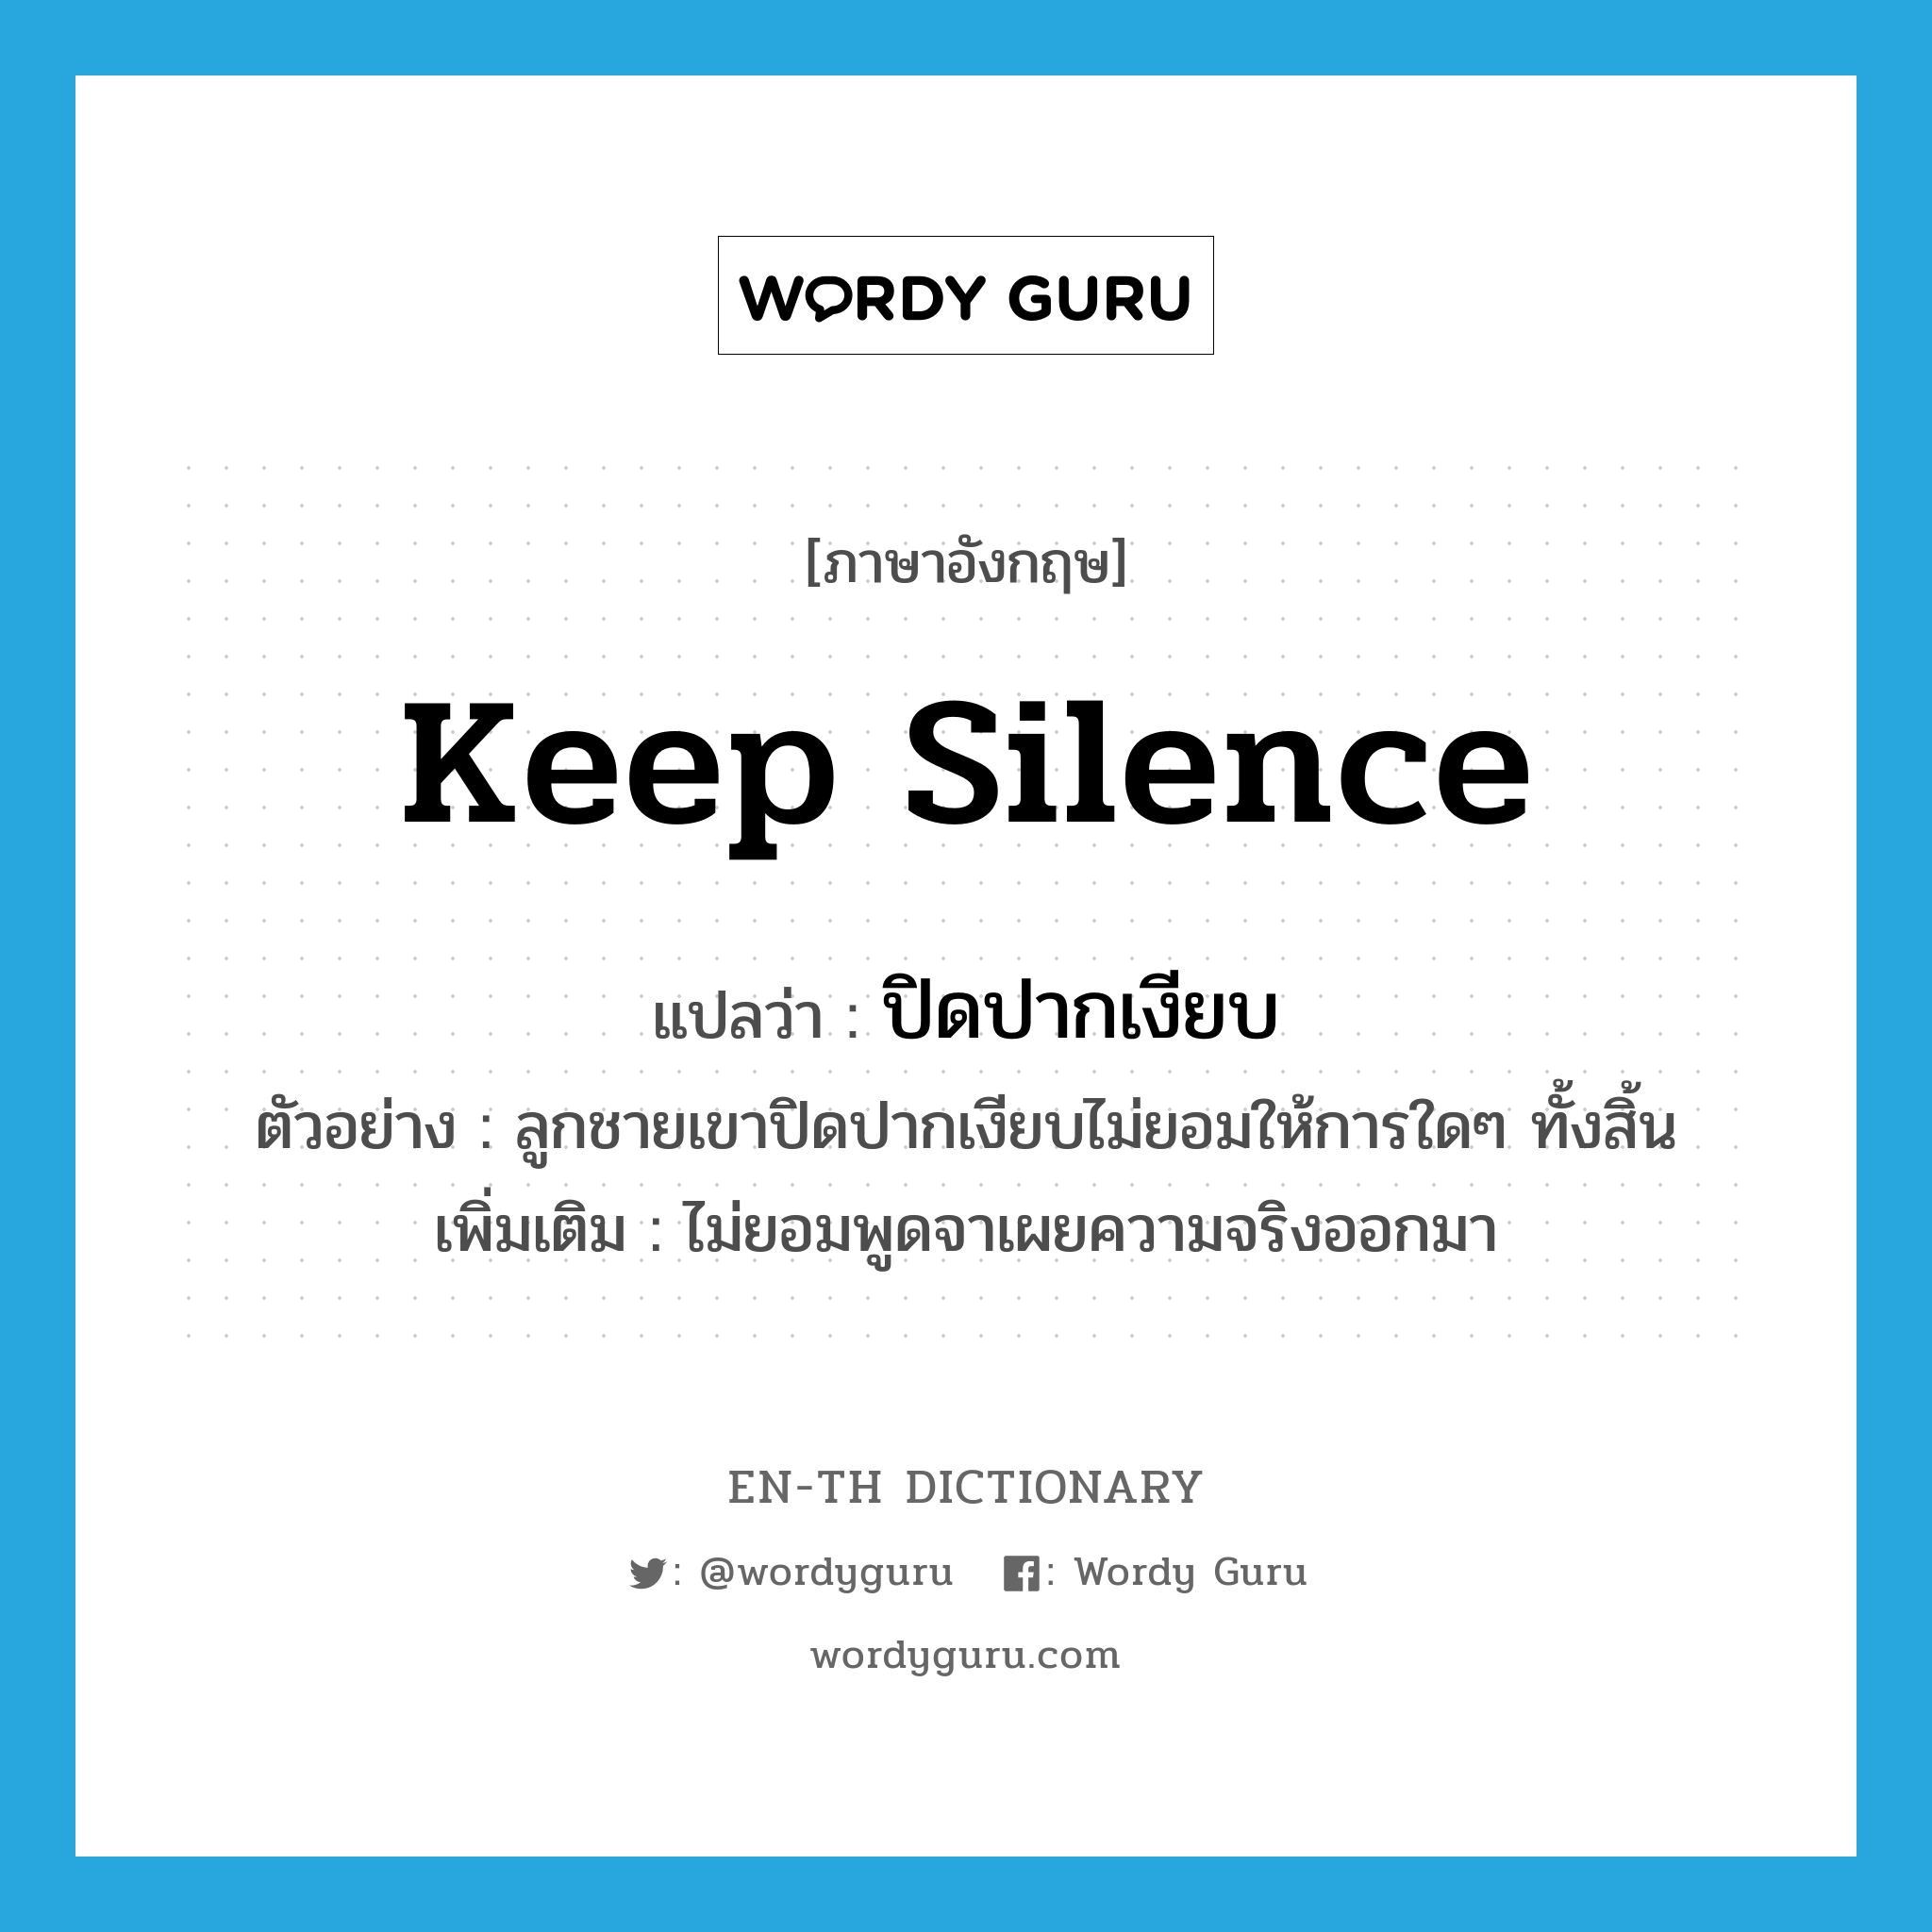 keep silence แปลว่า?, คำศัพท์ภาษาอังกฤษ keep silence แปลว่า ปิดปากเงียบ ประเภท V ตัวอย่าง ลูกชายเขาปิดปากเงียบไม่ยอมให้การใดๆ ทั้งสิ้น เพิ่มเติม ไม่ยอมพูดจาเผยความจริงออกมา หมวด V